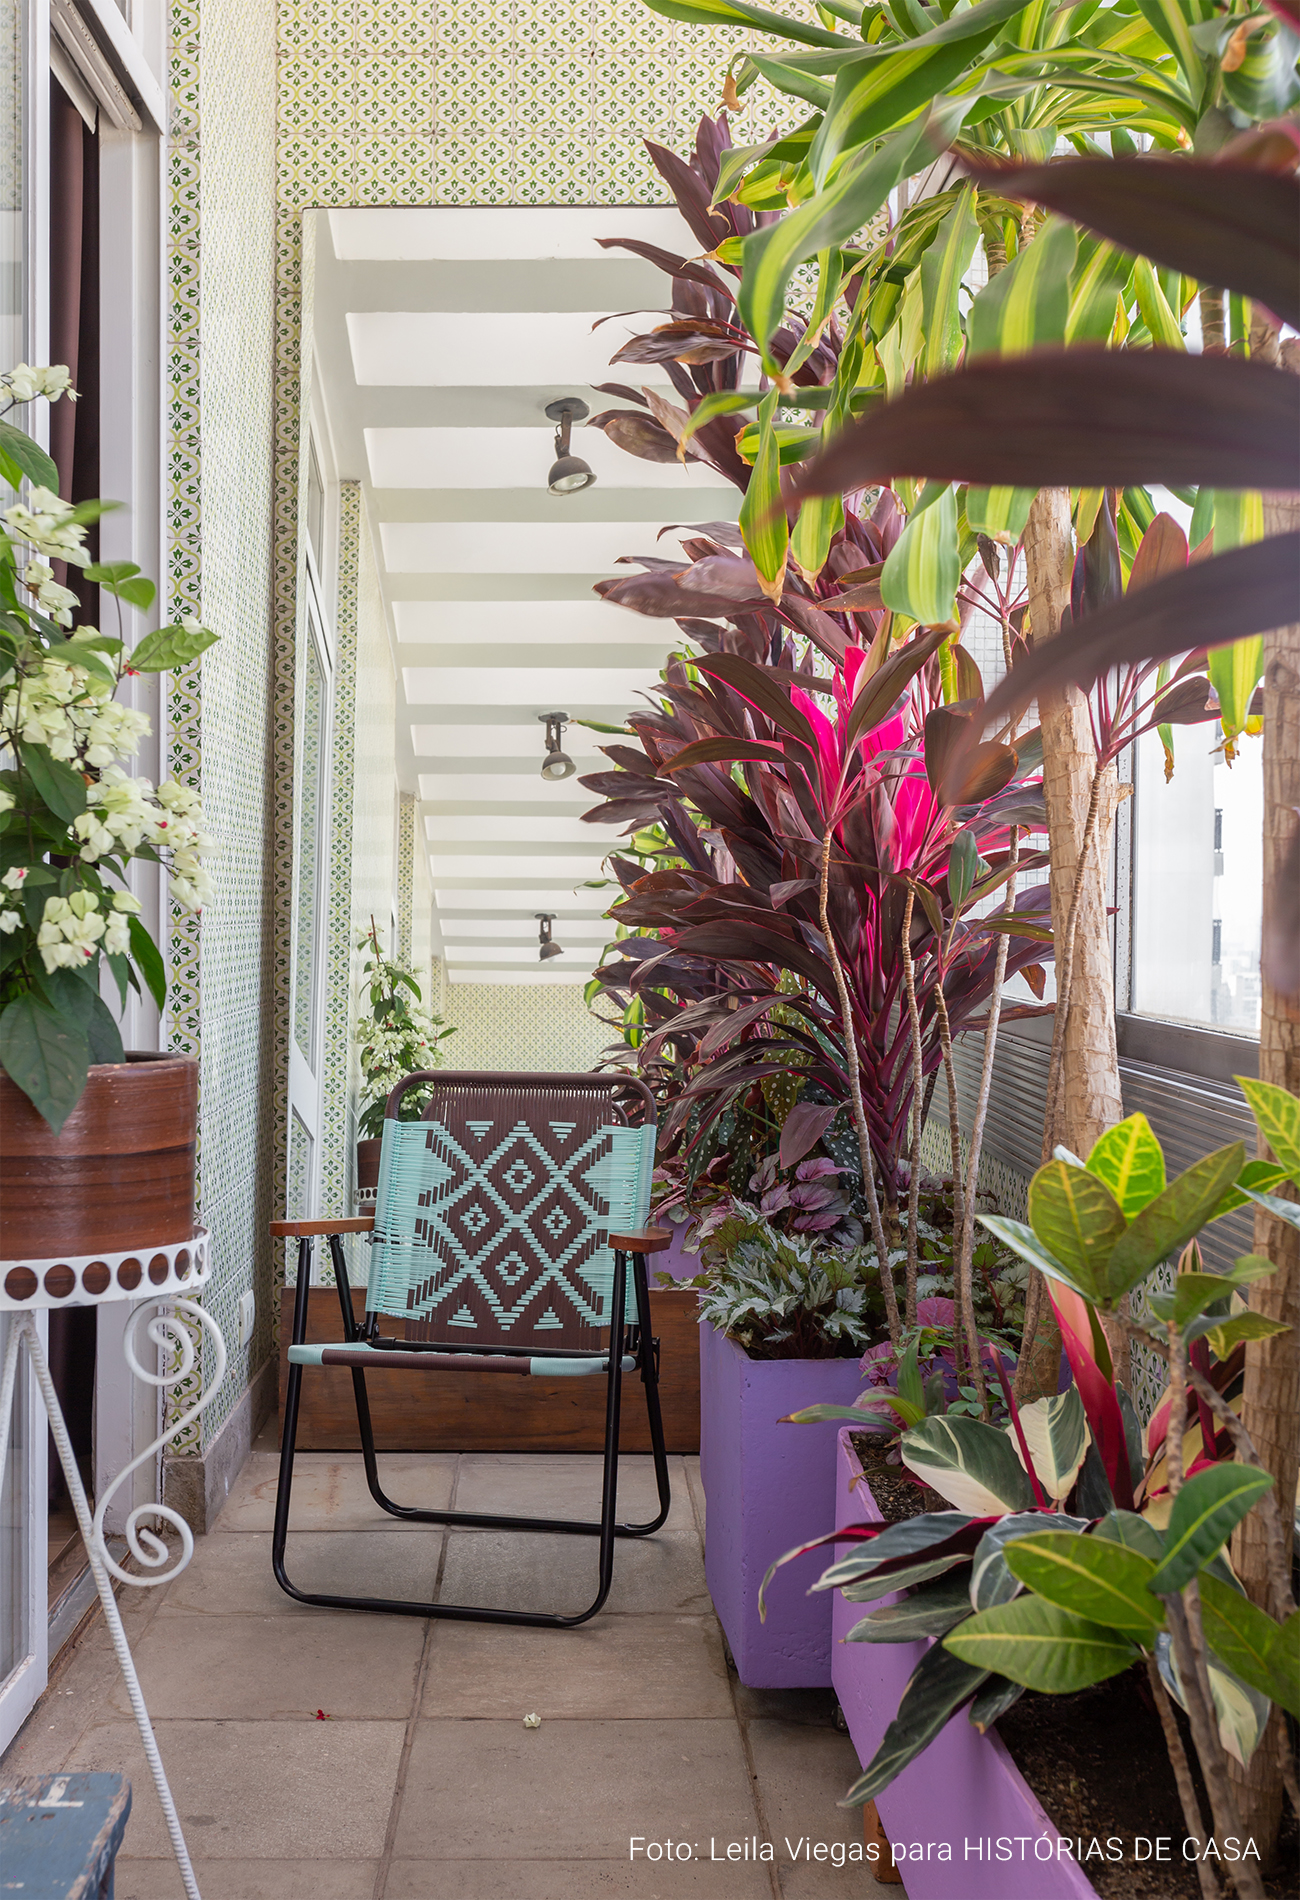 Apartamento colorido e criativo com muitas plantas e objetos de decoração afetivos